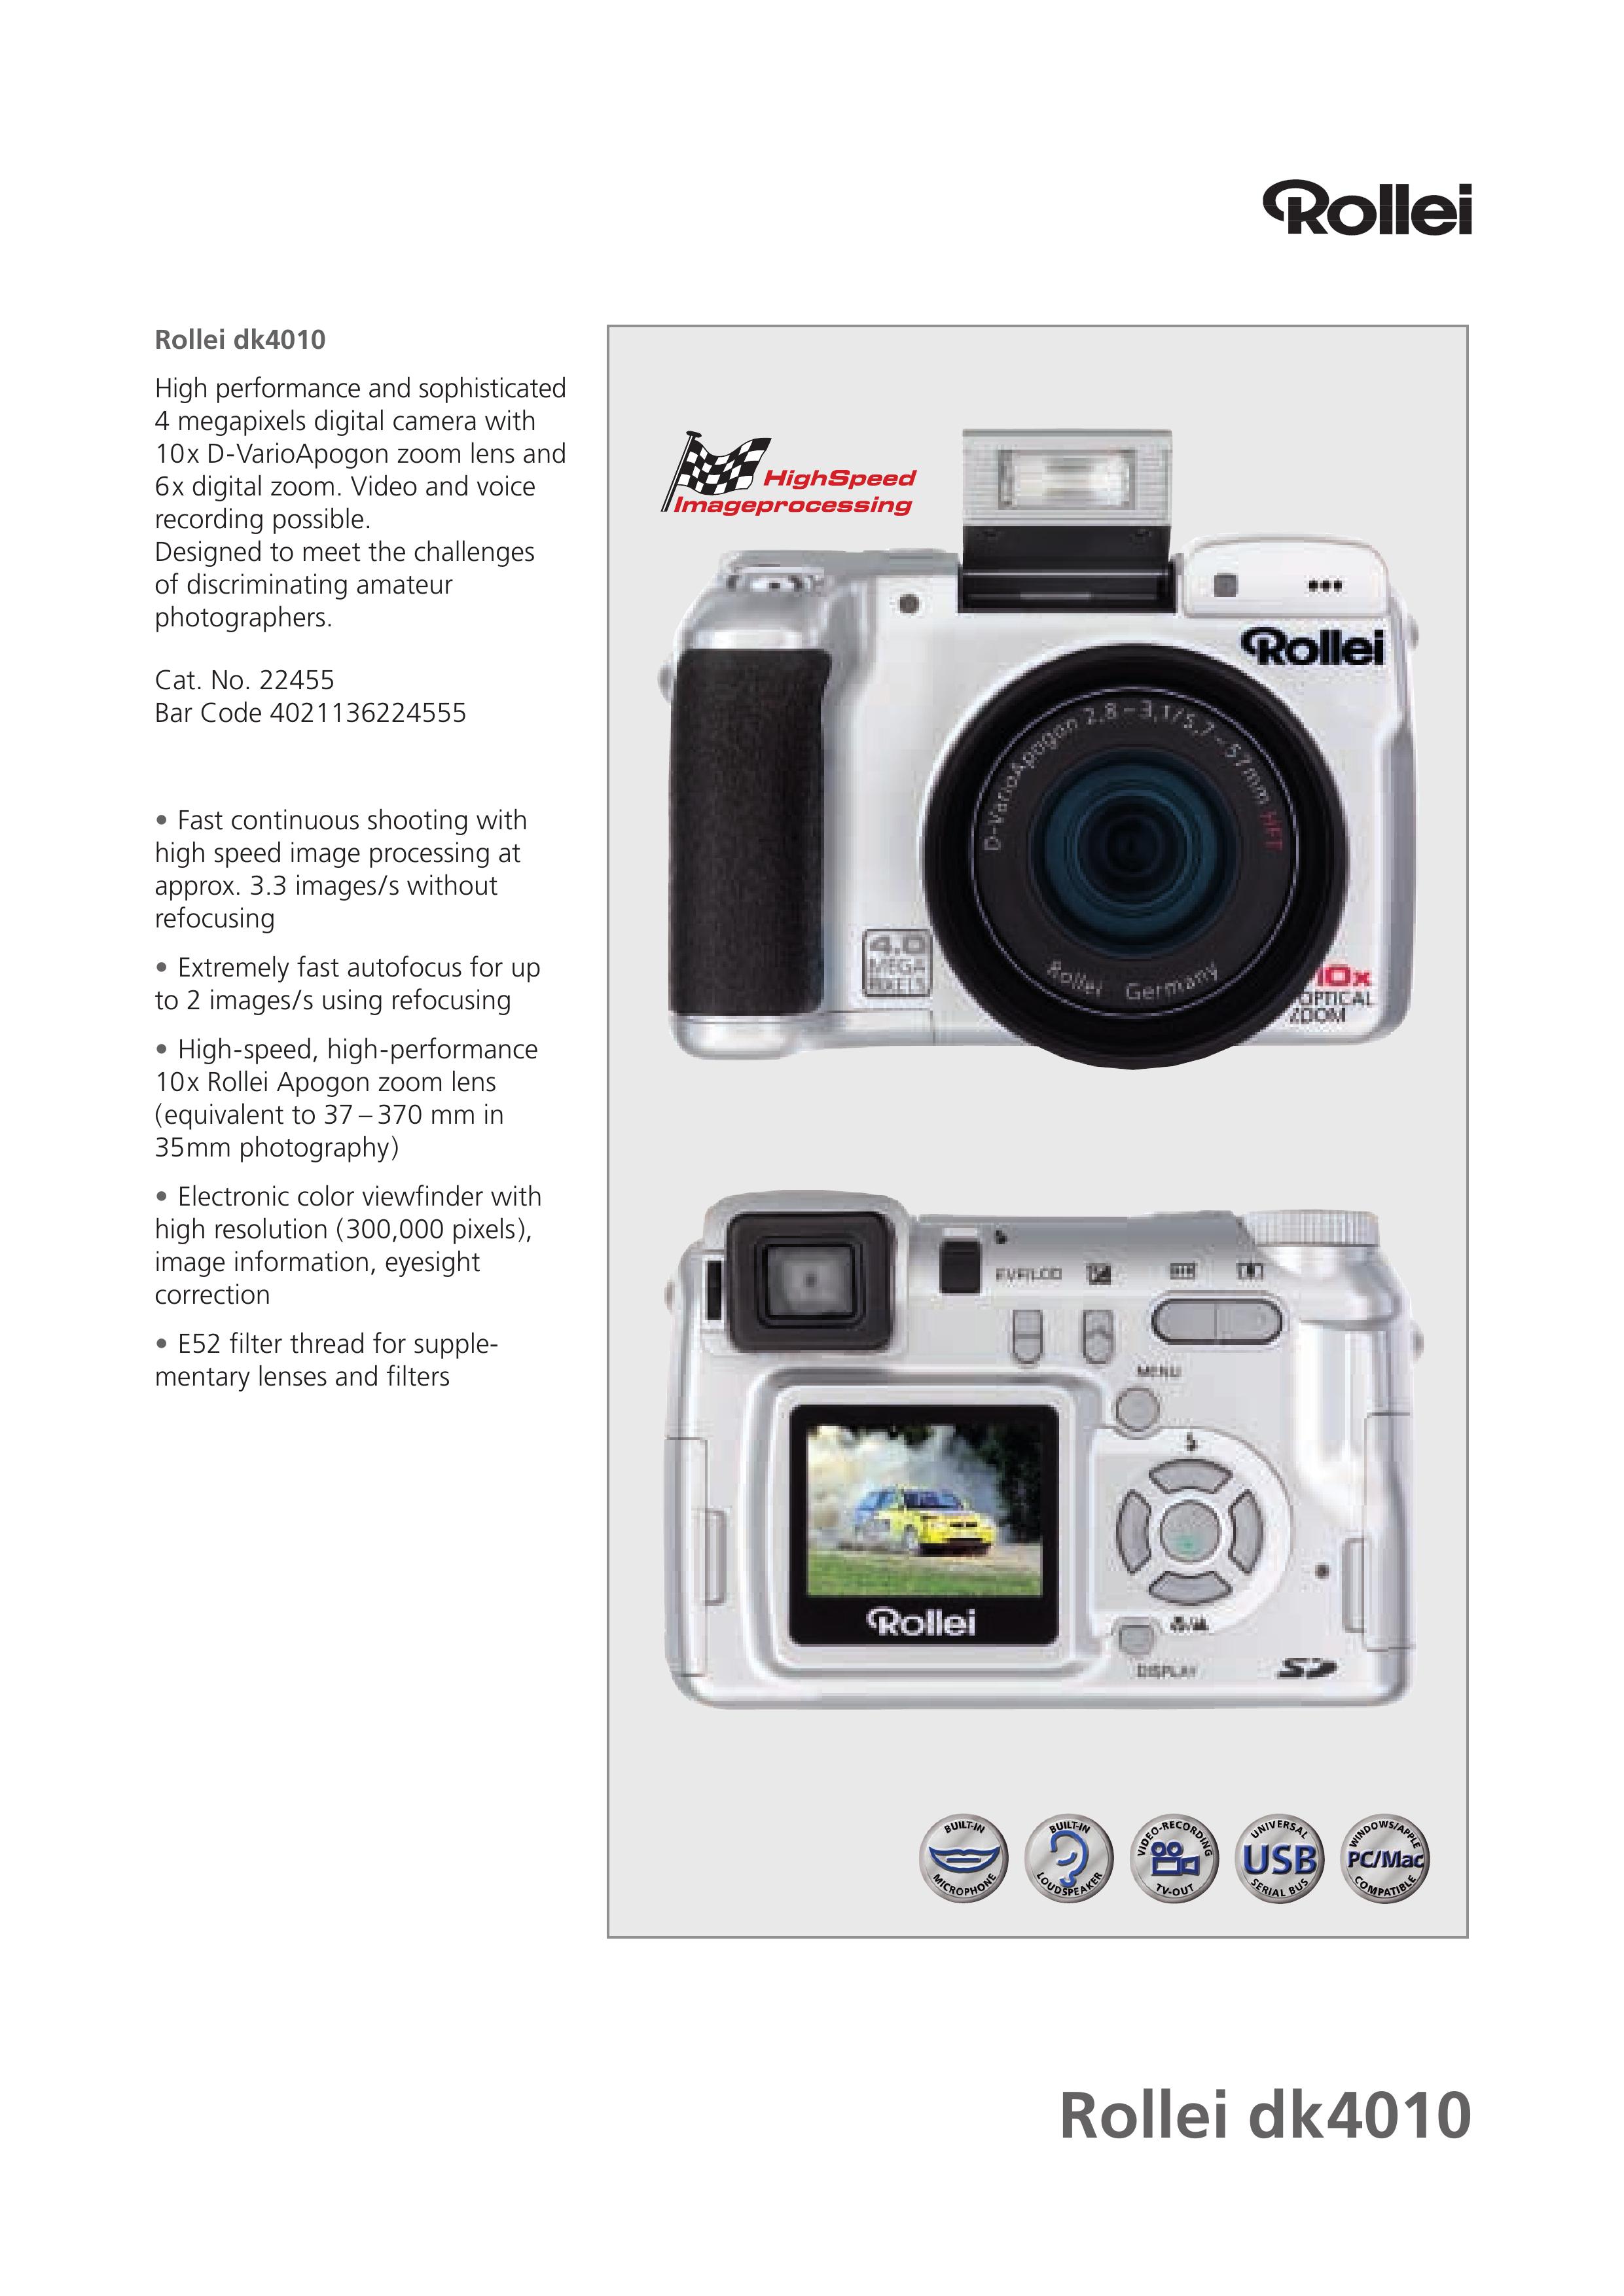 Rollei Dk4010 Digital Camera User Manual